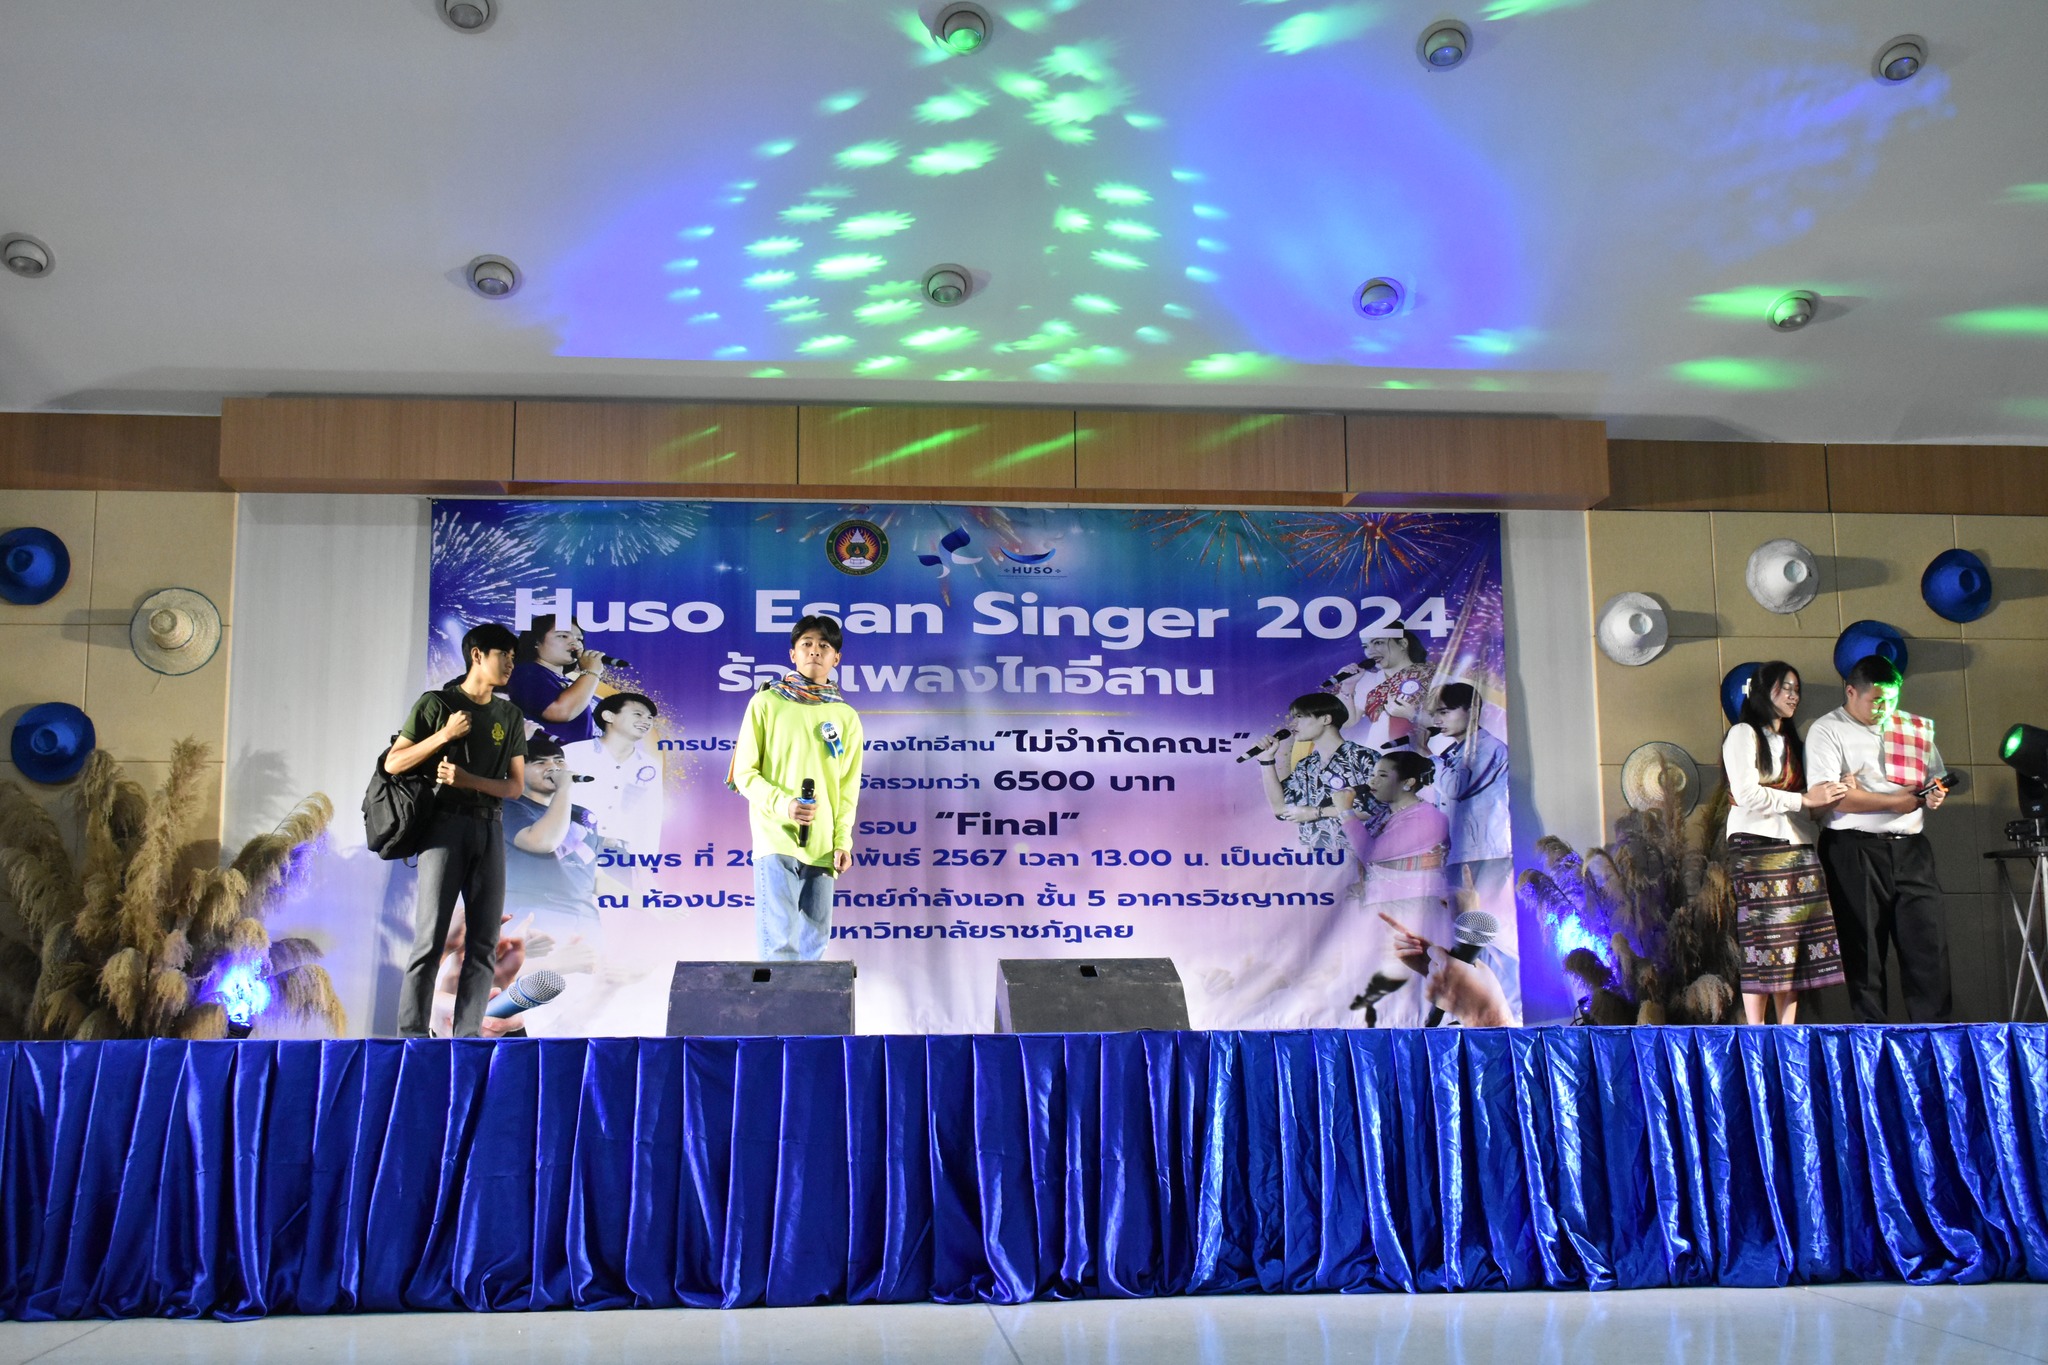 กิจกรรมประกวดร้องเพลง “HUSO E-San Single 2024”